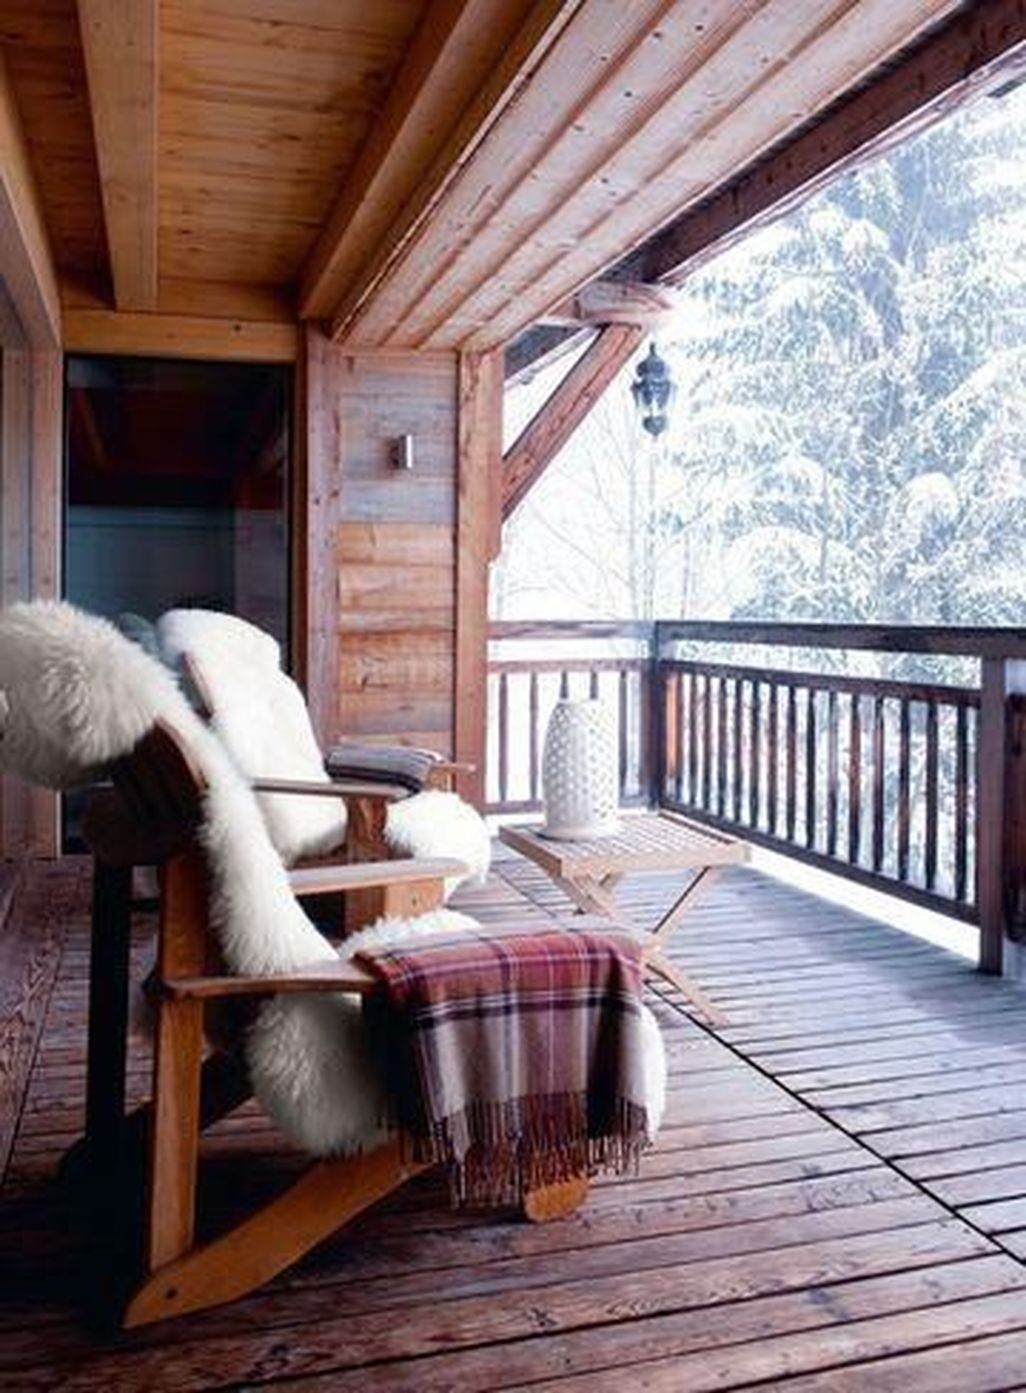 25 Идей зимнего декора балконов и террас, которые становятся еще прекраснее с приходом зимы